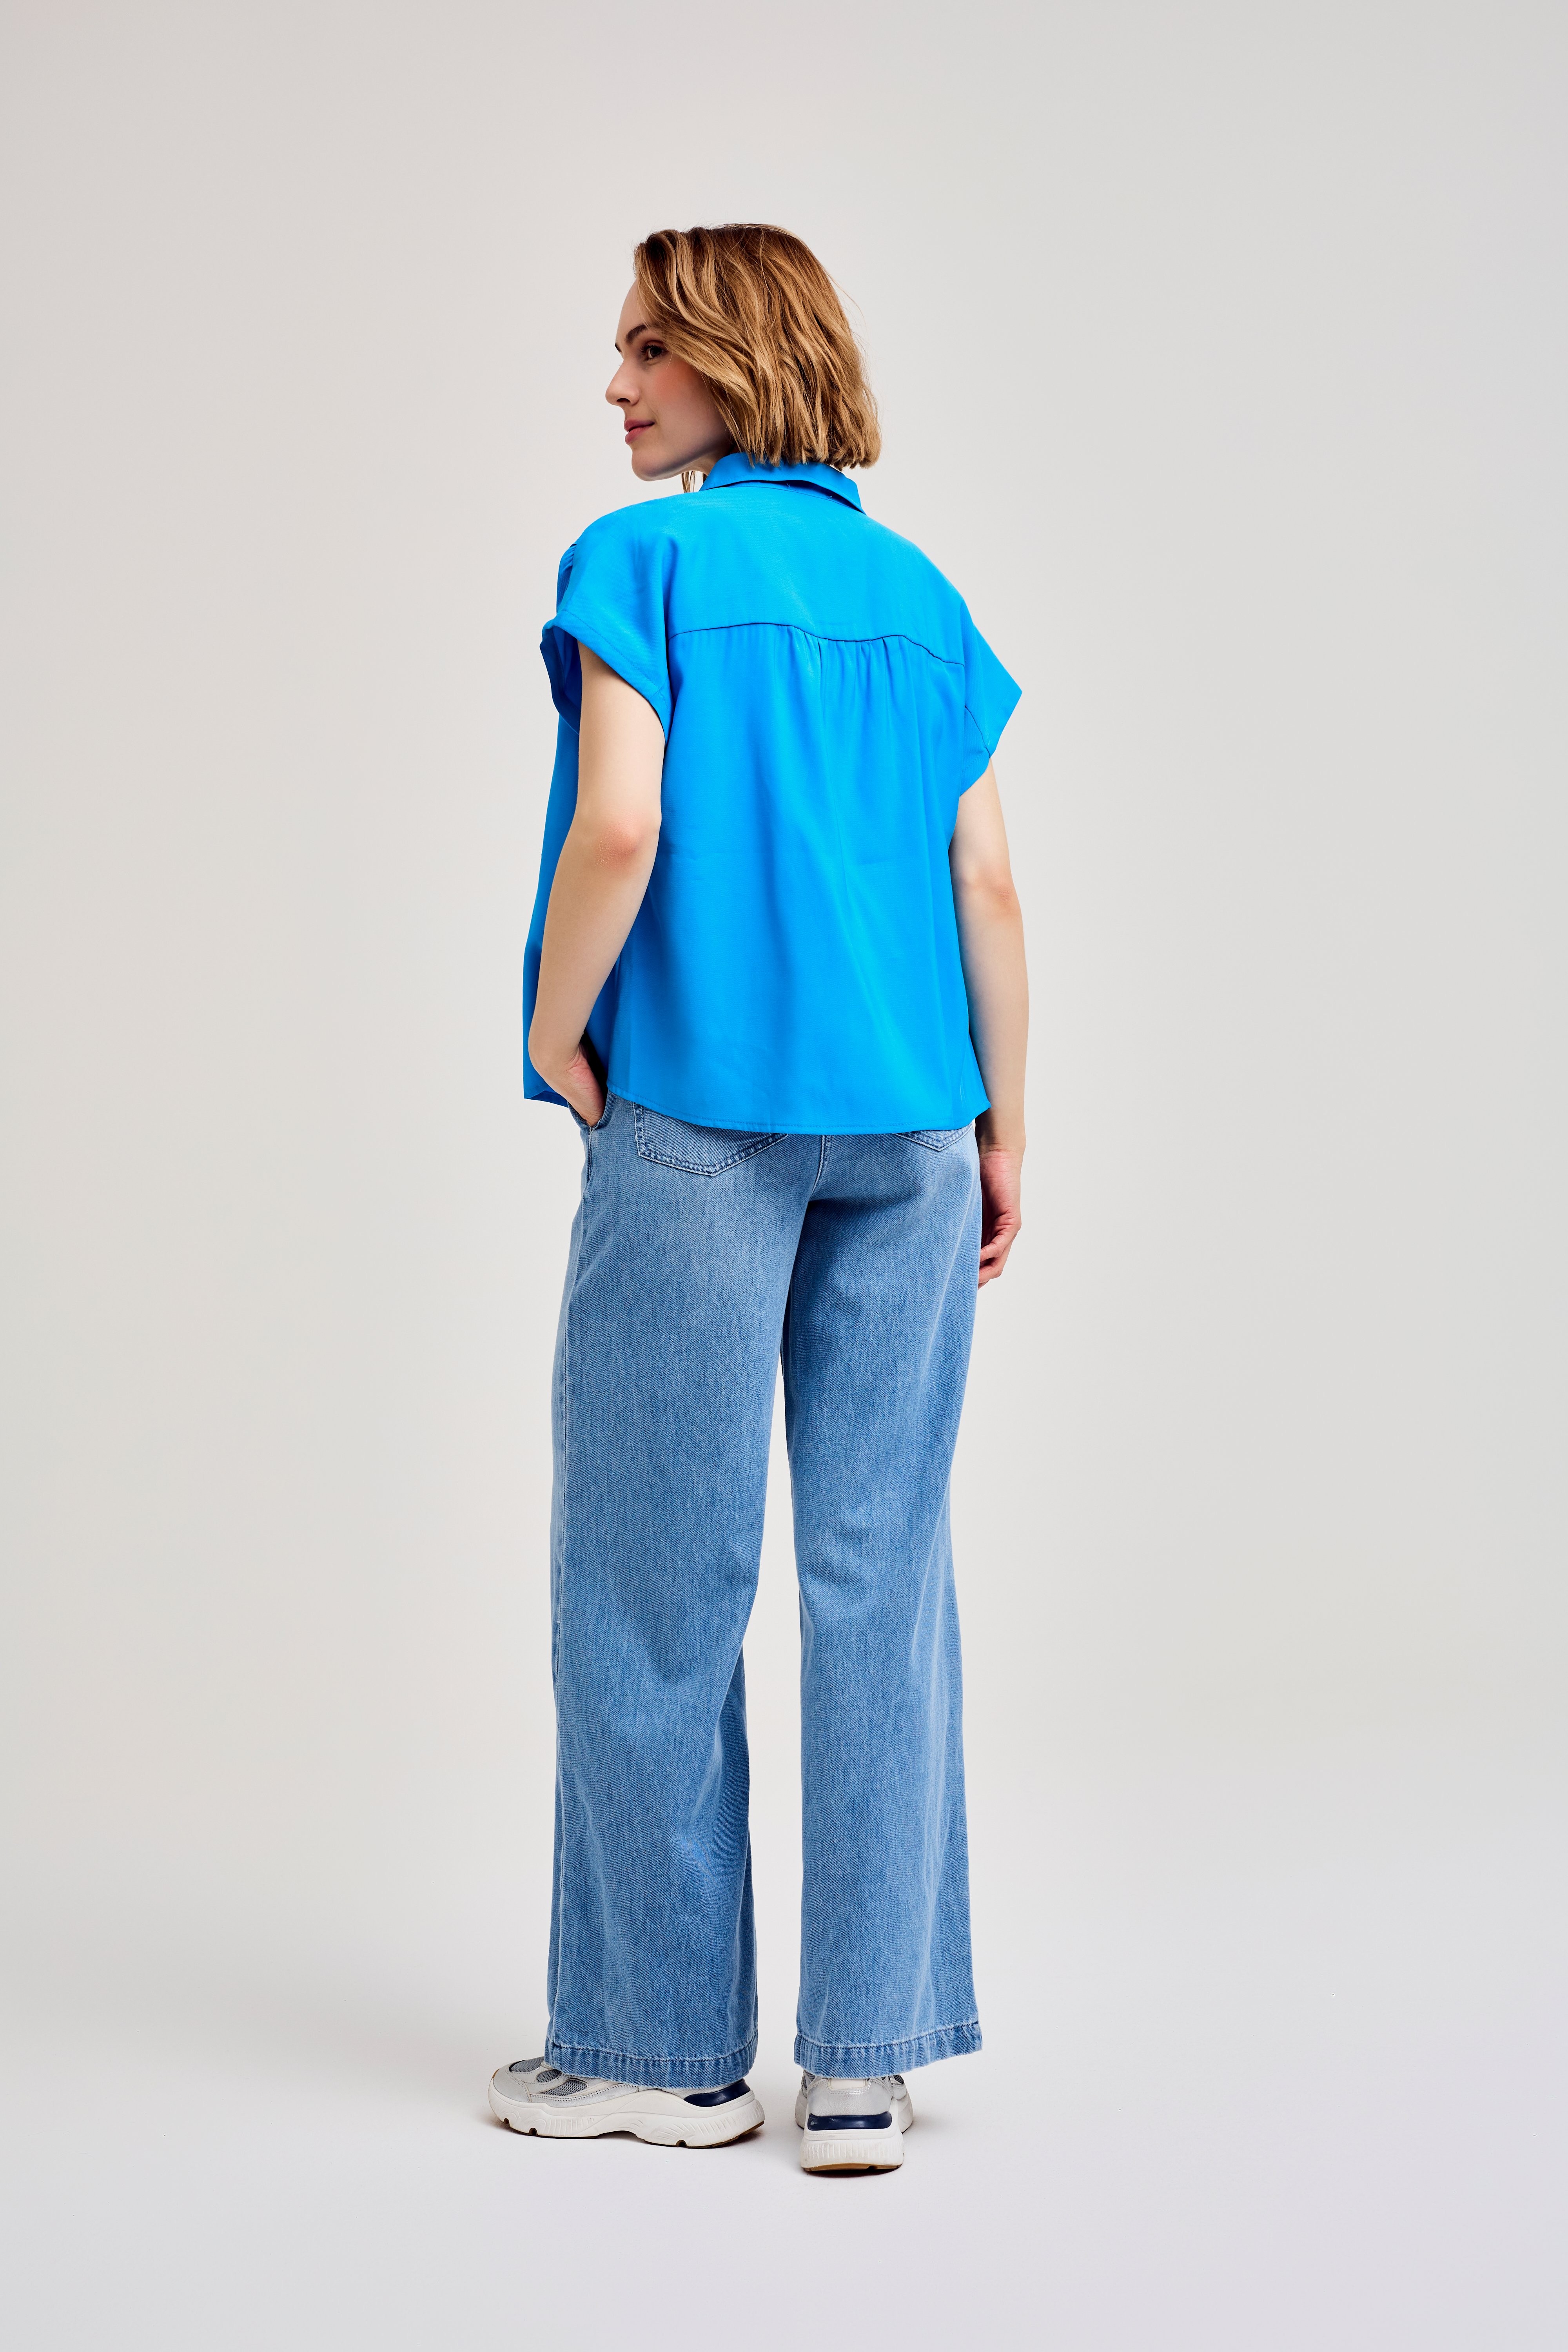 CKS Dames - ECHO - blouse half-length sleeves - vivid blue